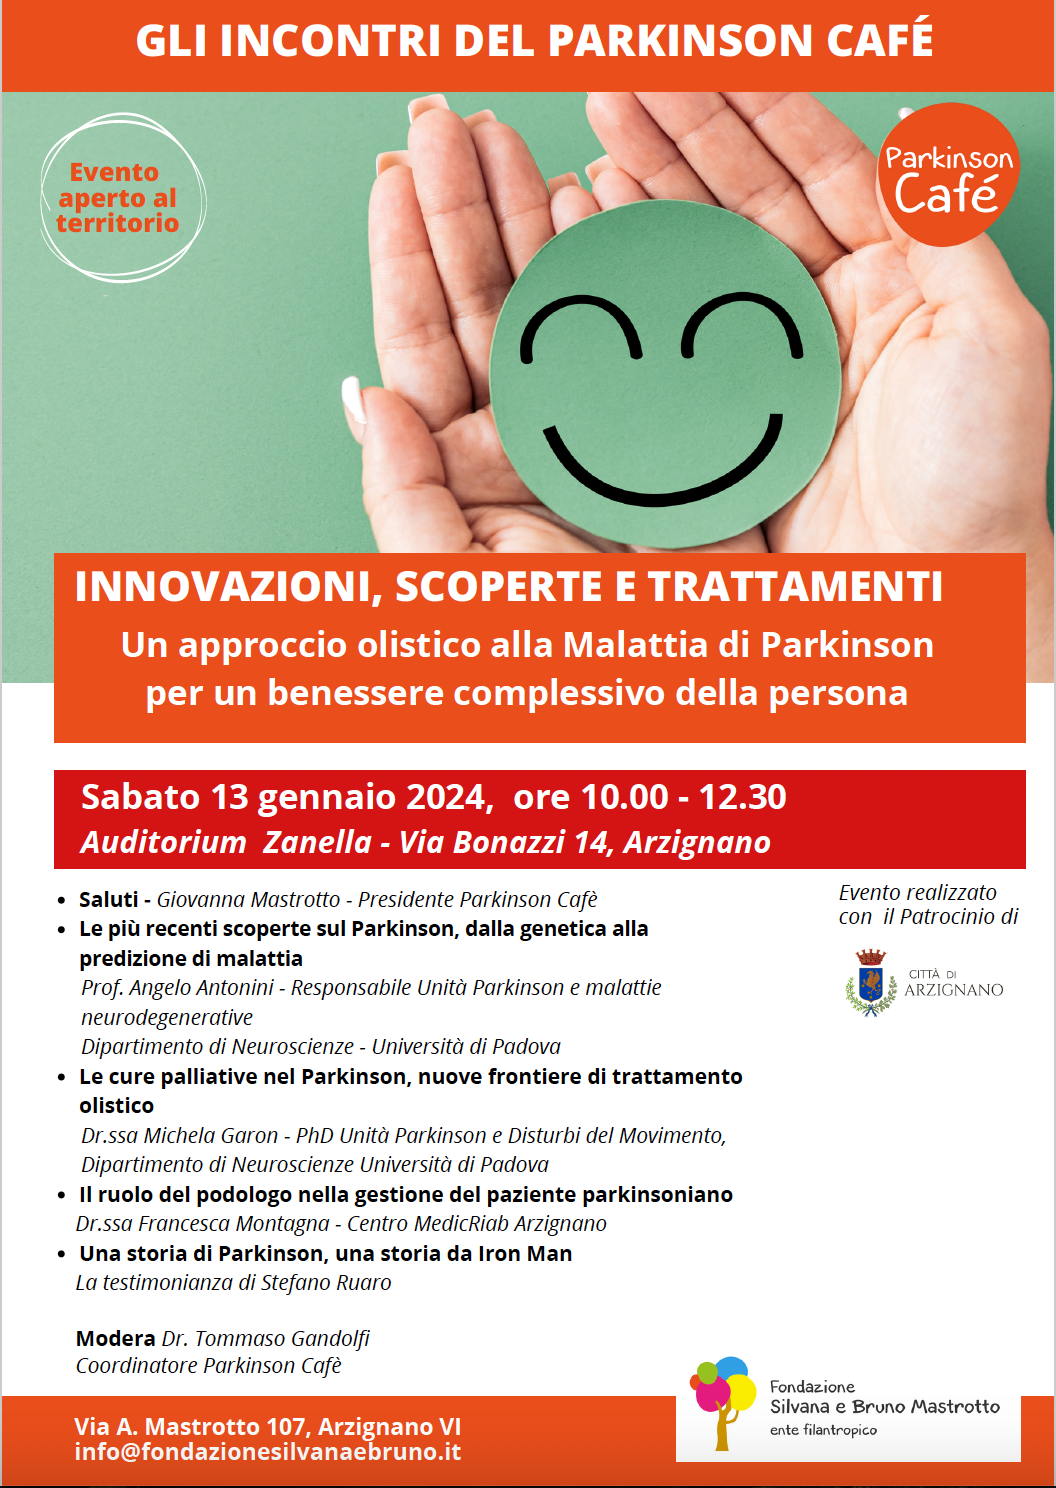 Innovazioni scoperte trattamenti_Parkinson Café_locandina